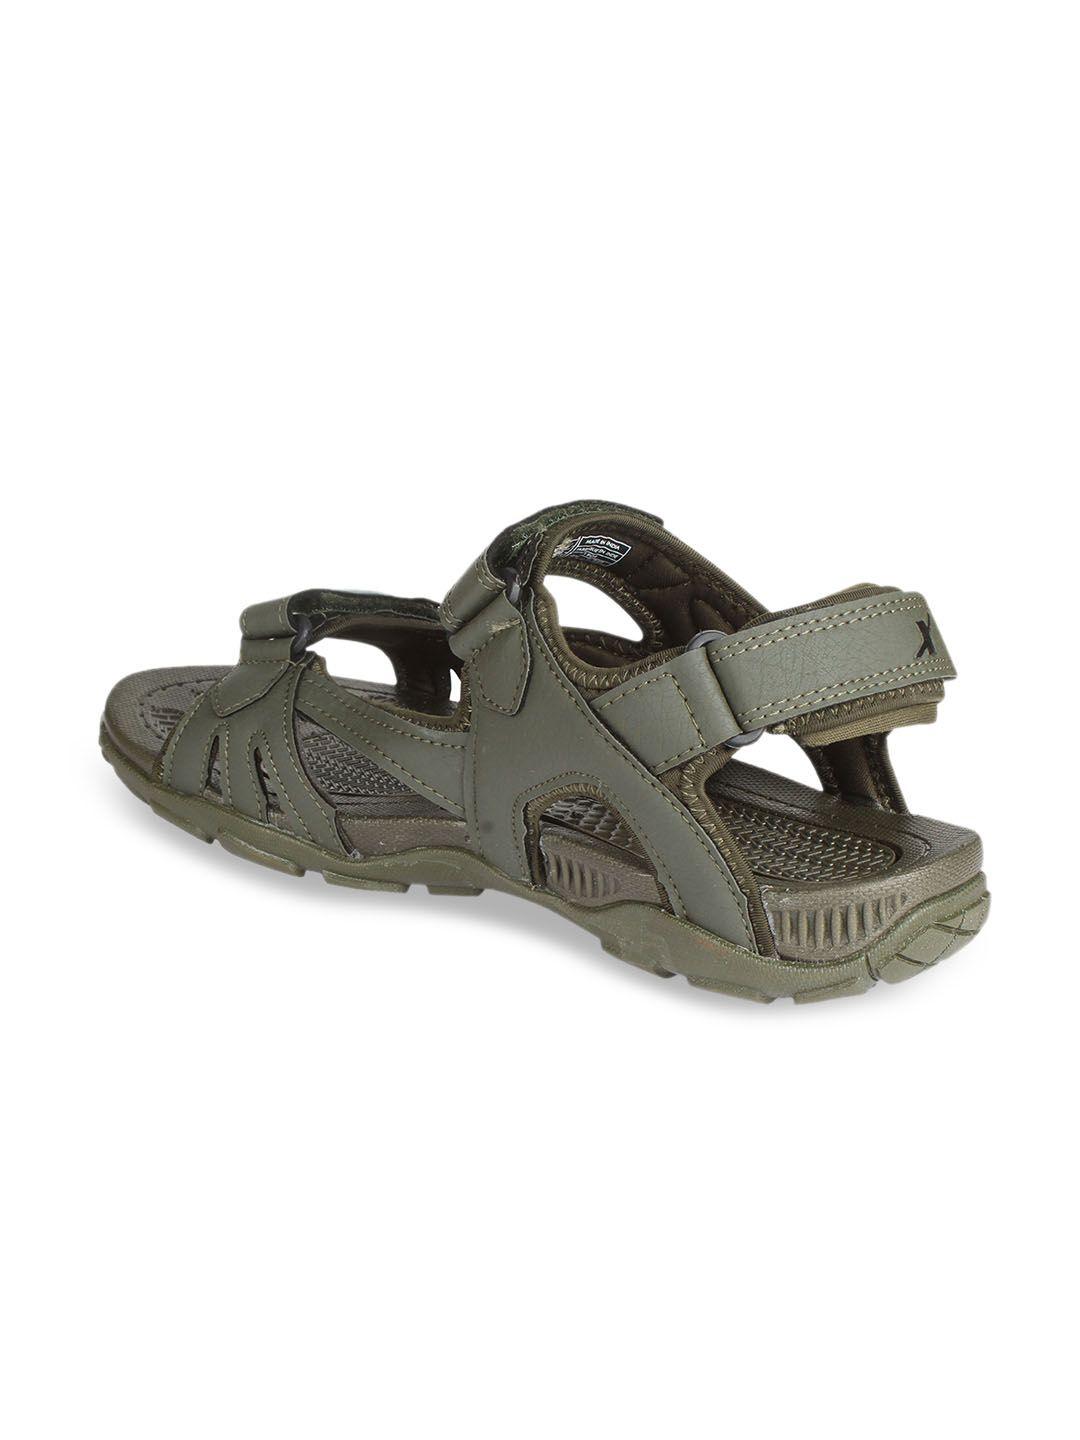 sparx men olive green sports sandals